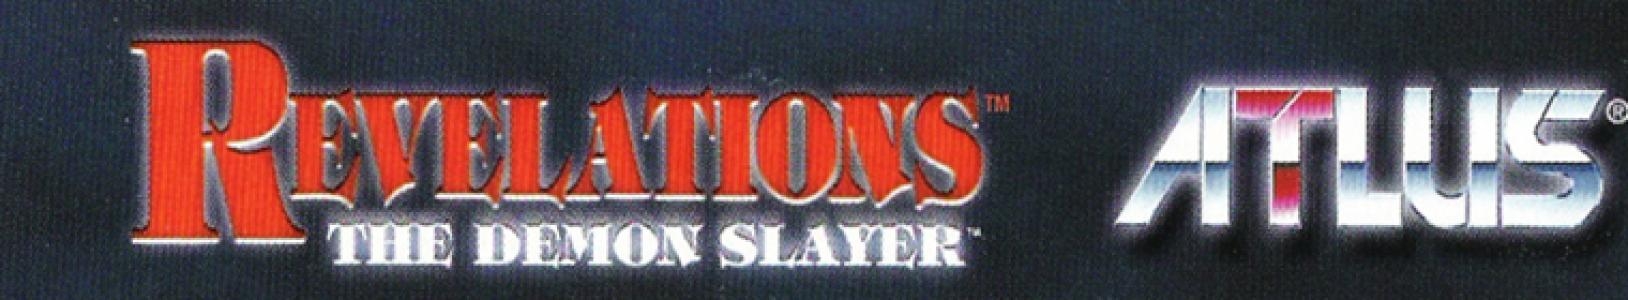 Revelations: The Demon Slayer banner